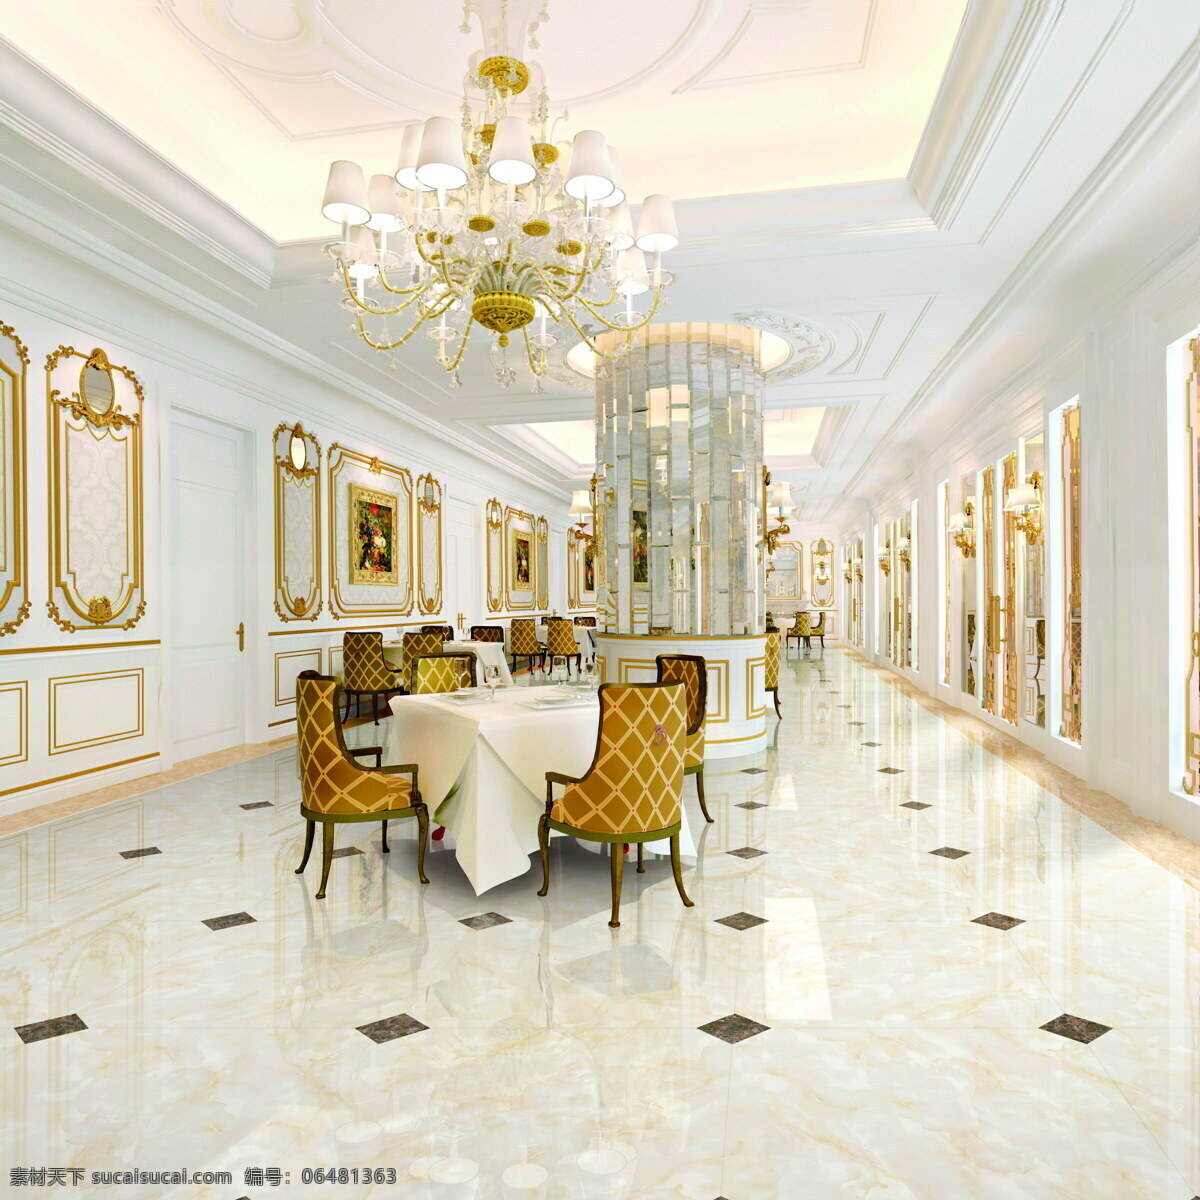 抛光砖 瓷砖 微晶石 效果图 全抛釉 酒店大堂 餐厅 合成效果图 环境设计 室内设计